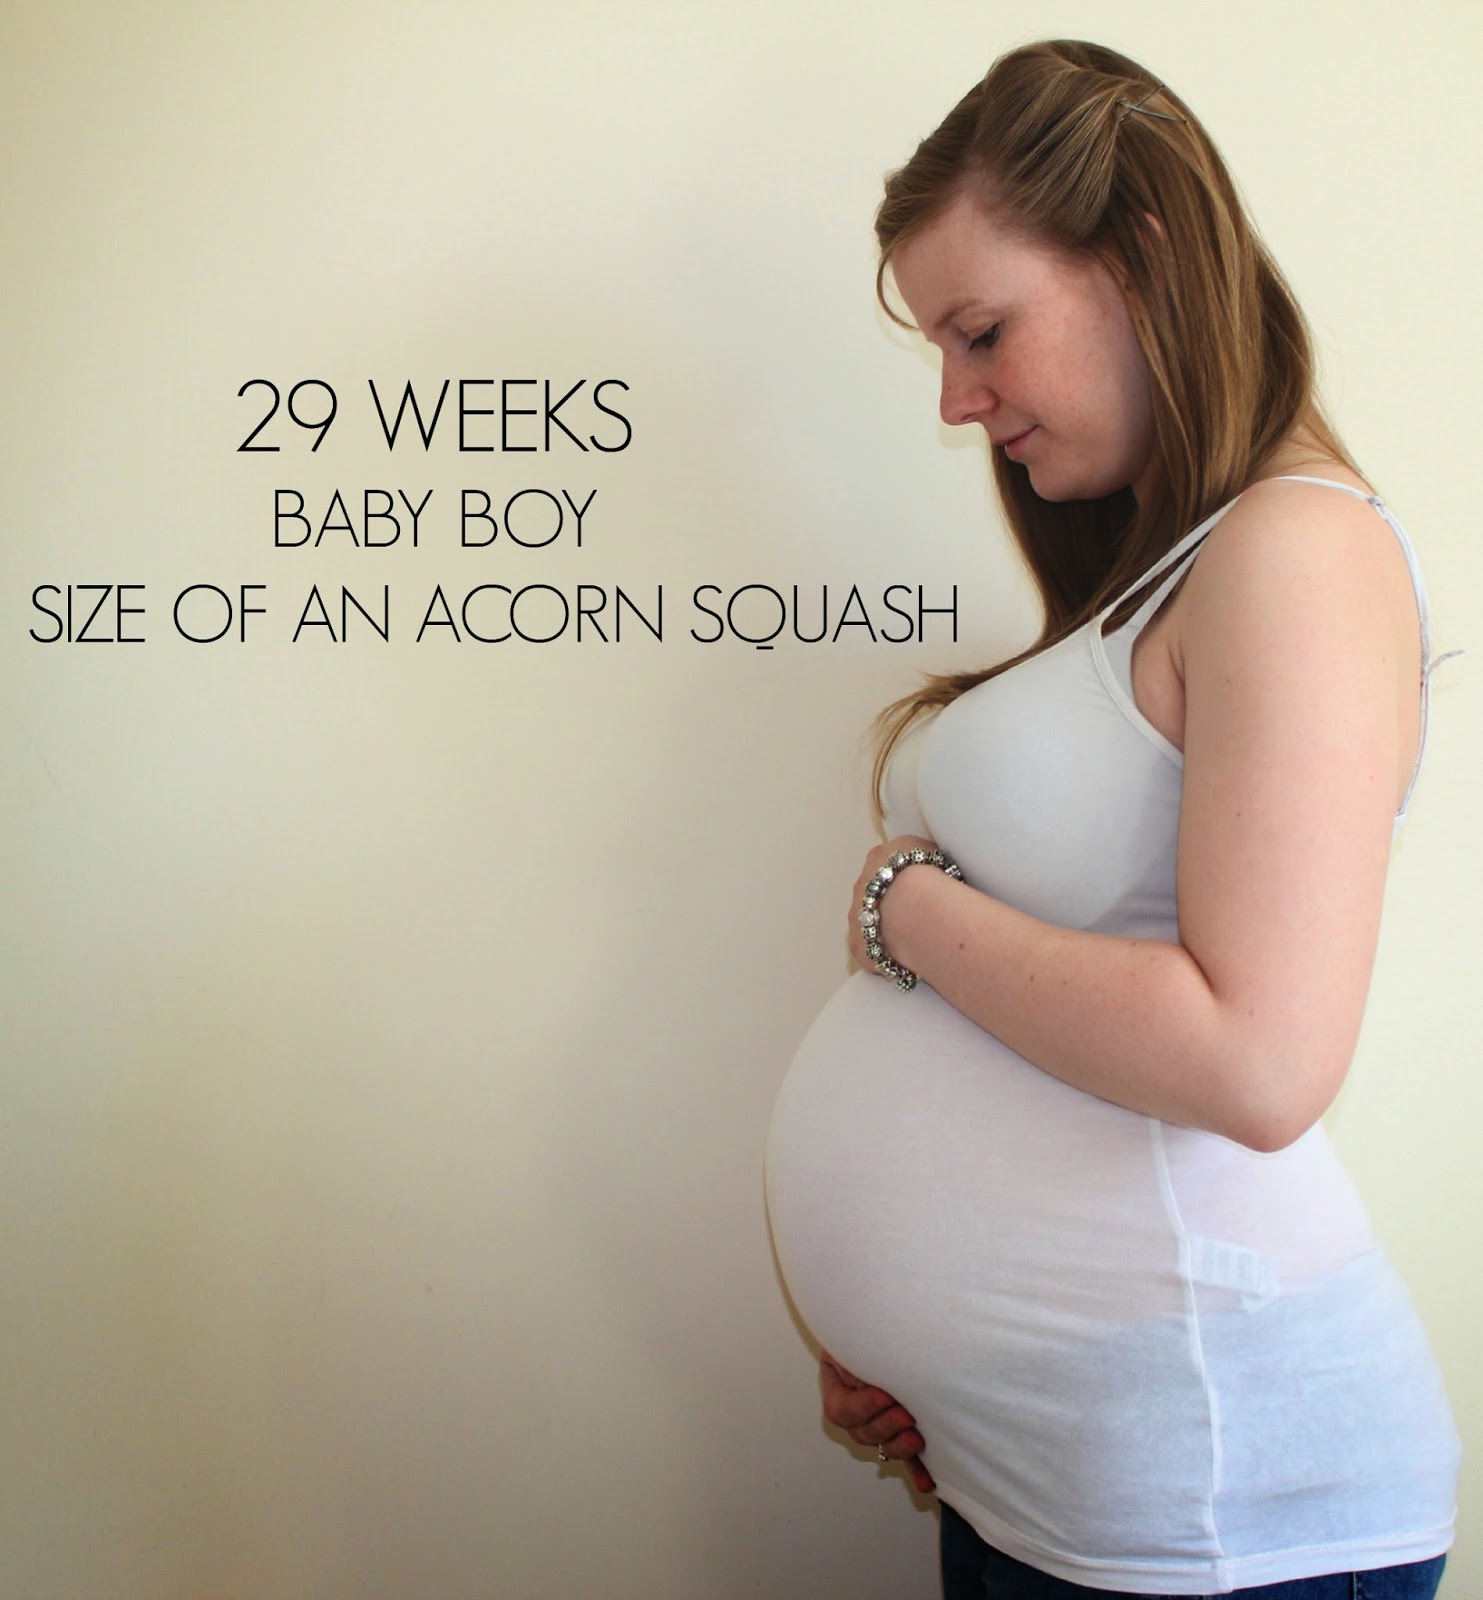 Pregnant Plus. Чего ждать на 40 неделе беременности. Как малыш расположен в животе на 29 неделе беременности. 39 неделя беременности отзывы